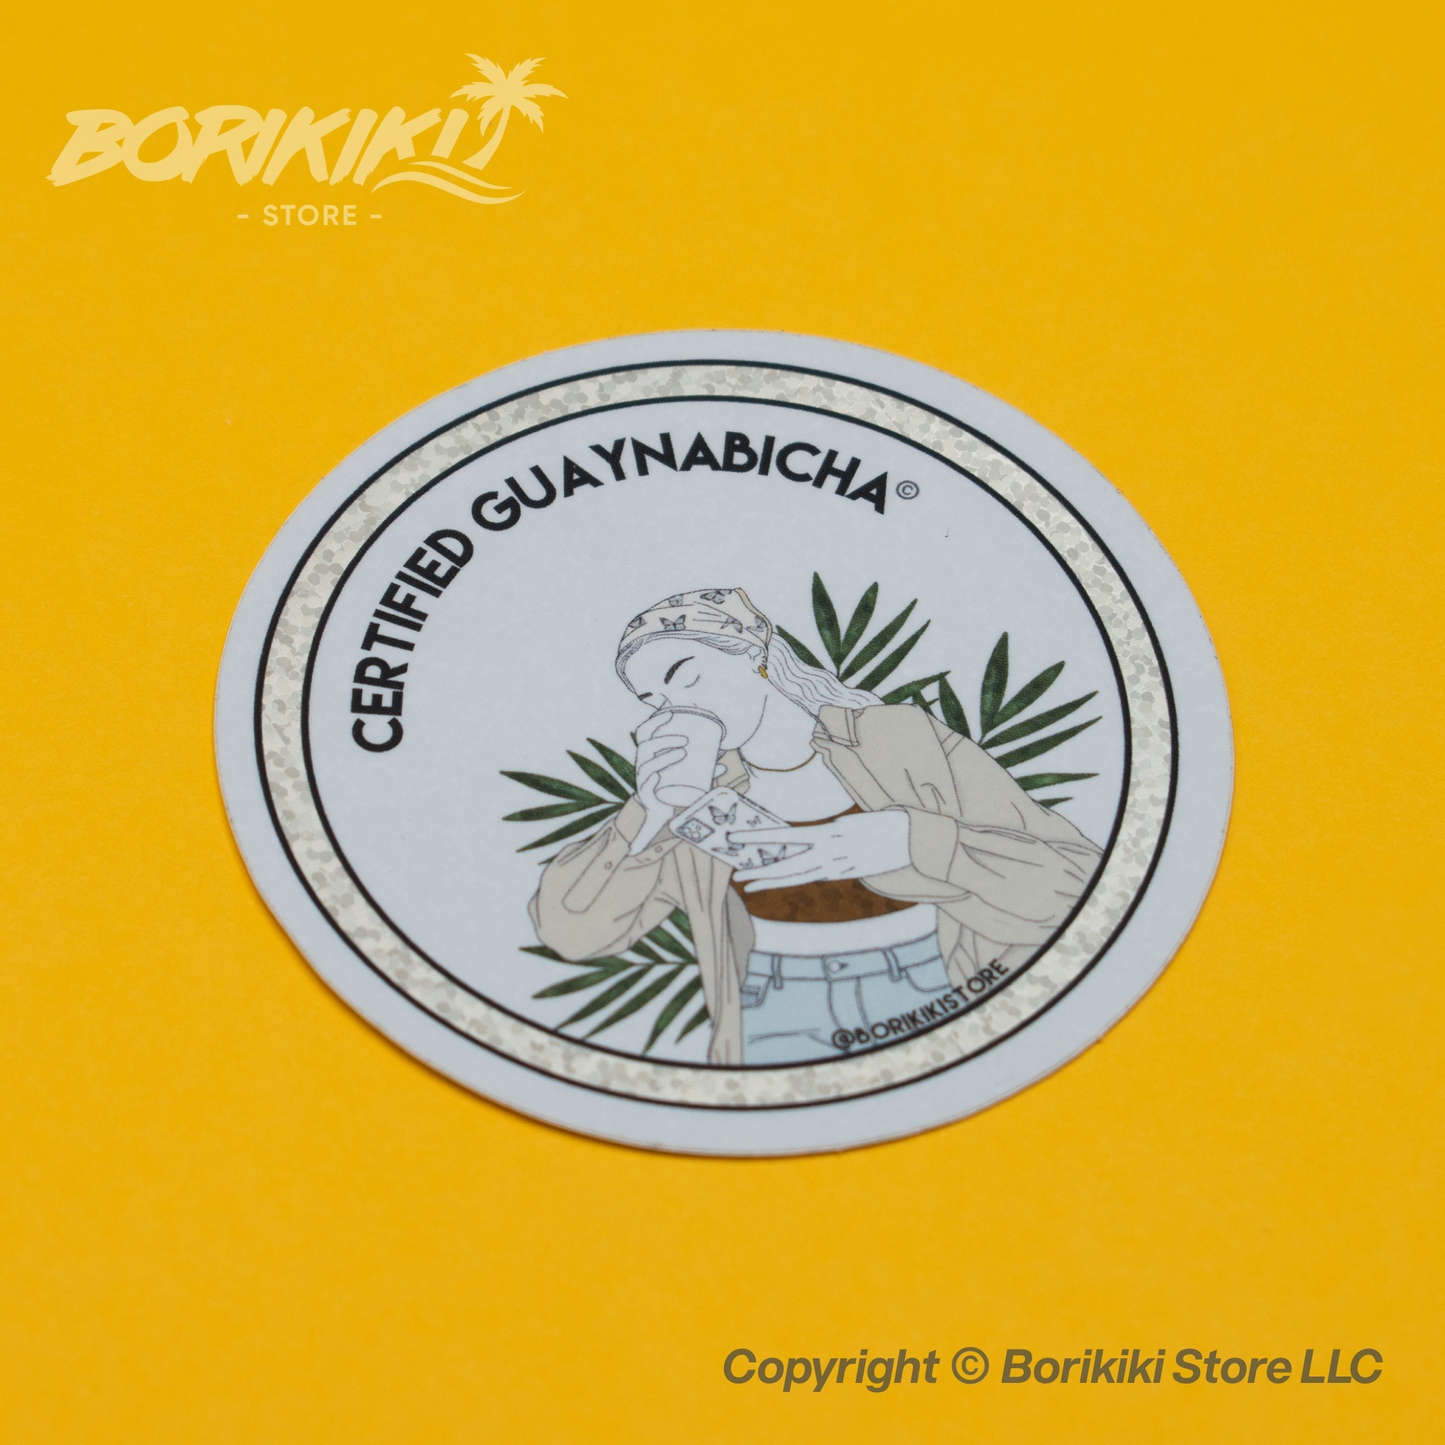 Certified Guaynabicha - Limited Edition Glitter